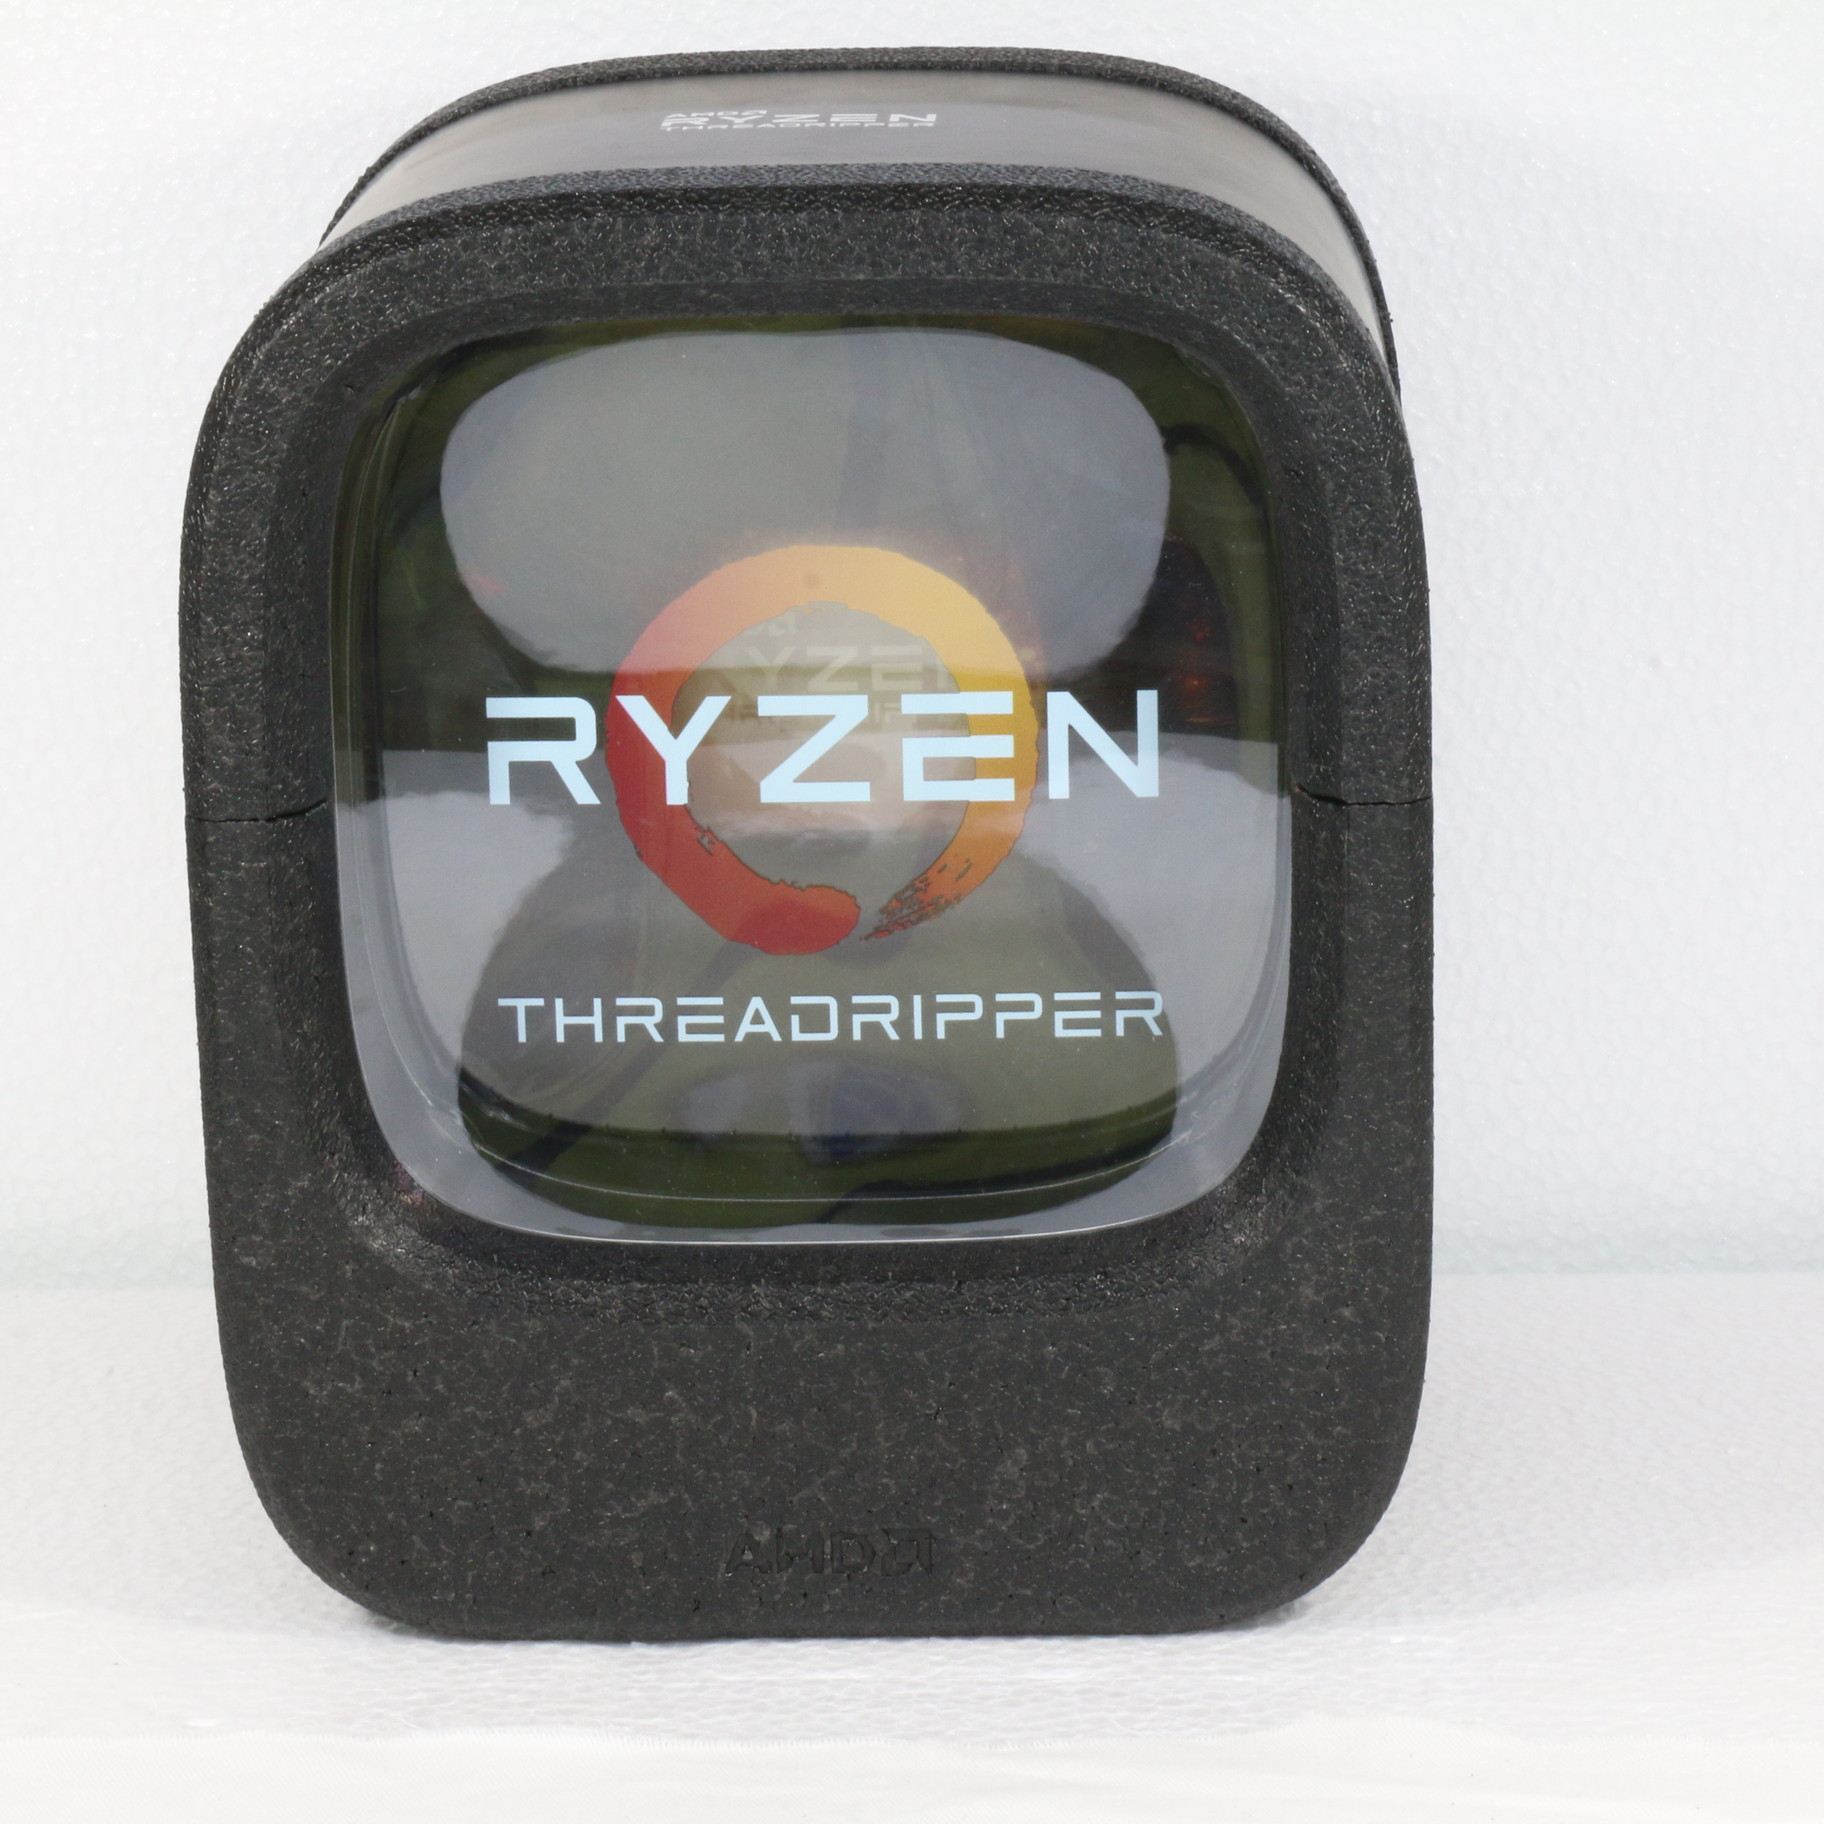 Ryzen Threadripper 1900X